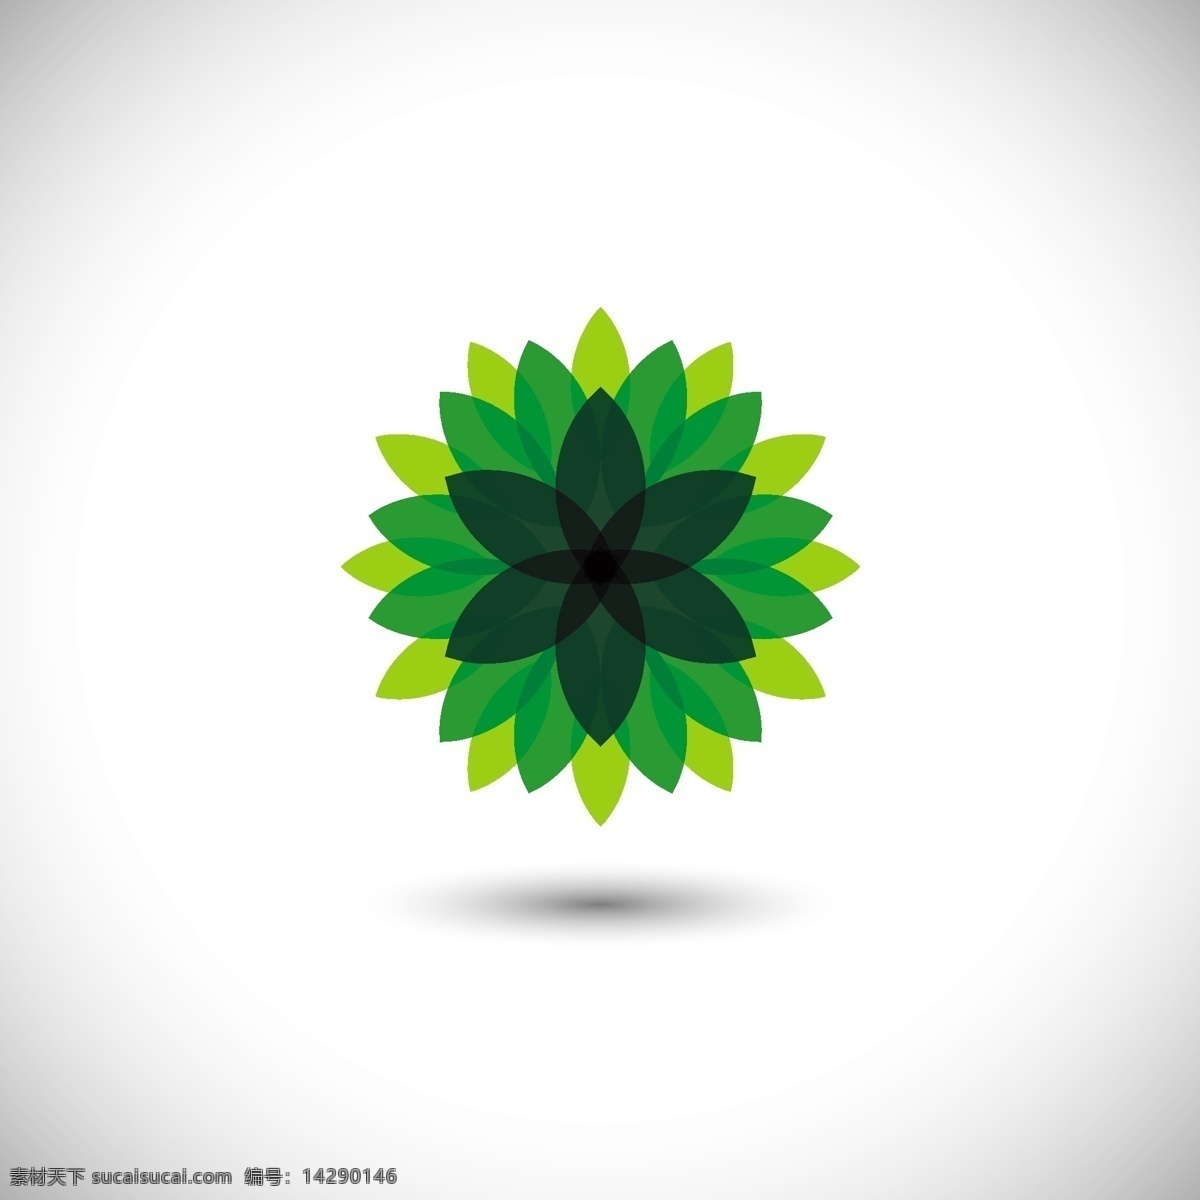 绿色 花卉 图案 标志 抽象 自然 叶 生态 植物 抽象的标志 环境 身份标识 花卉图案 绿色的叶子 自然的标志 白色